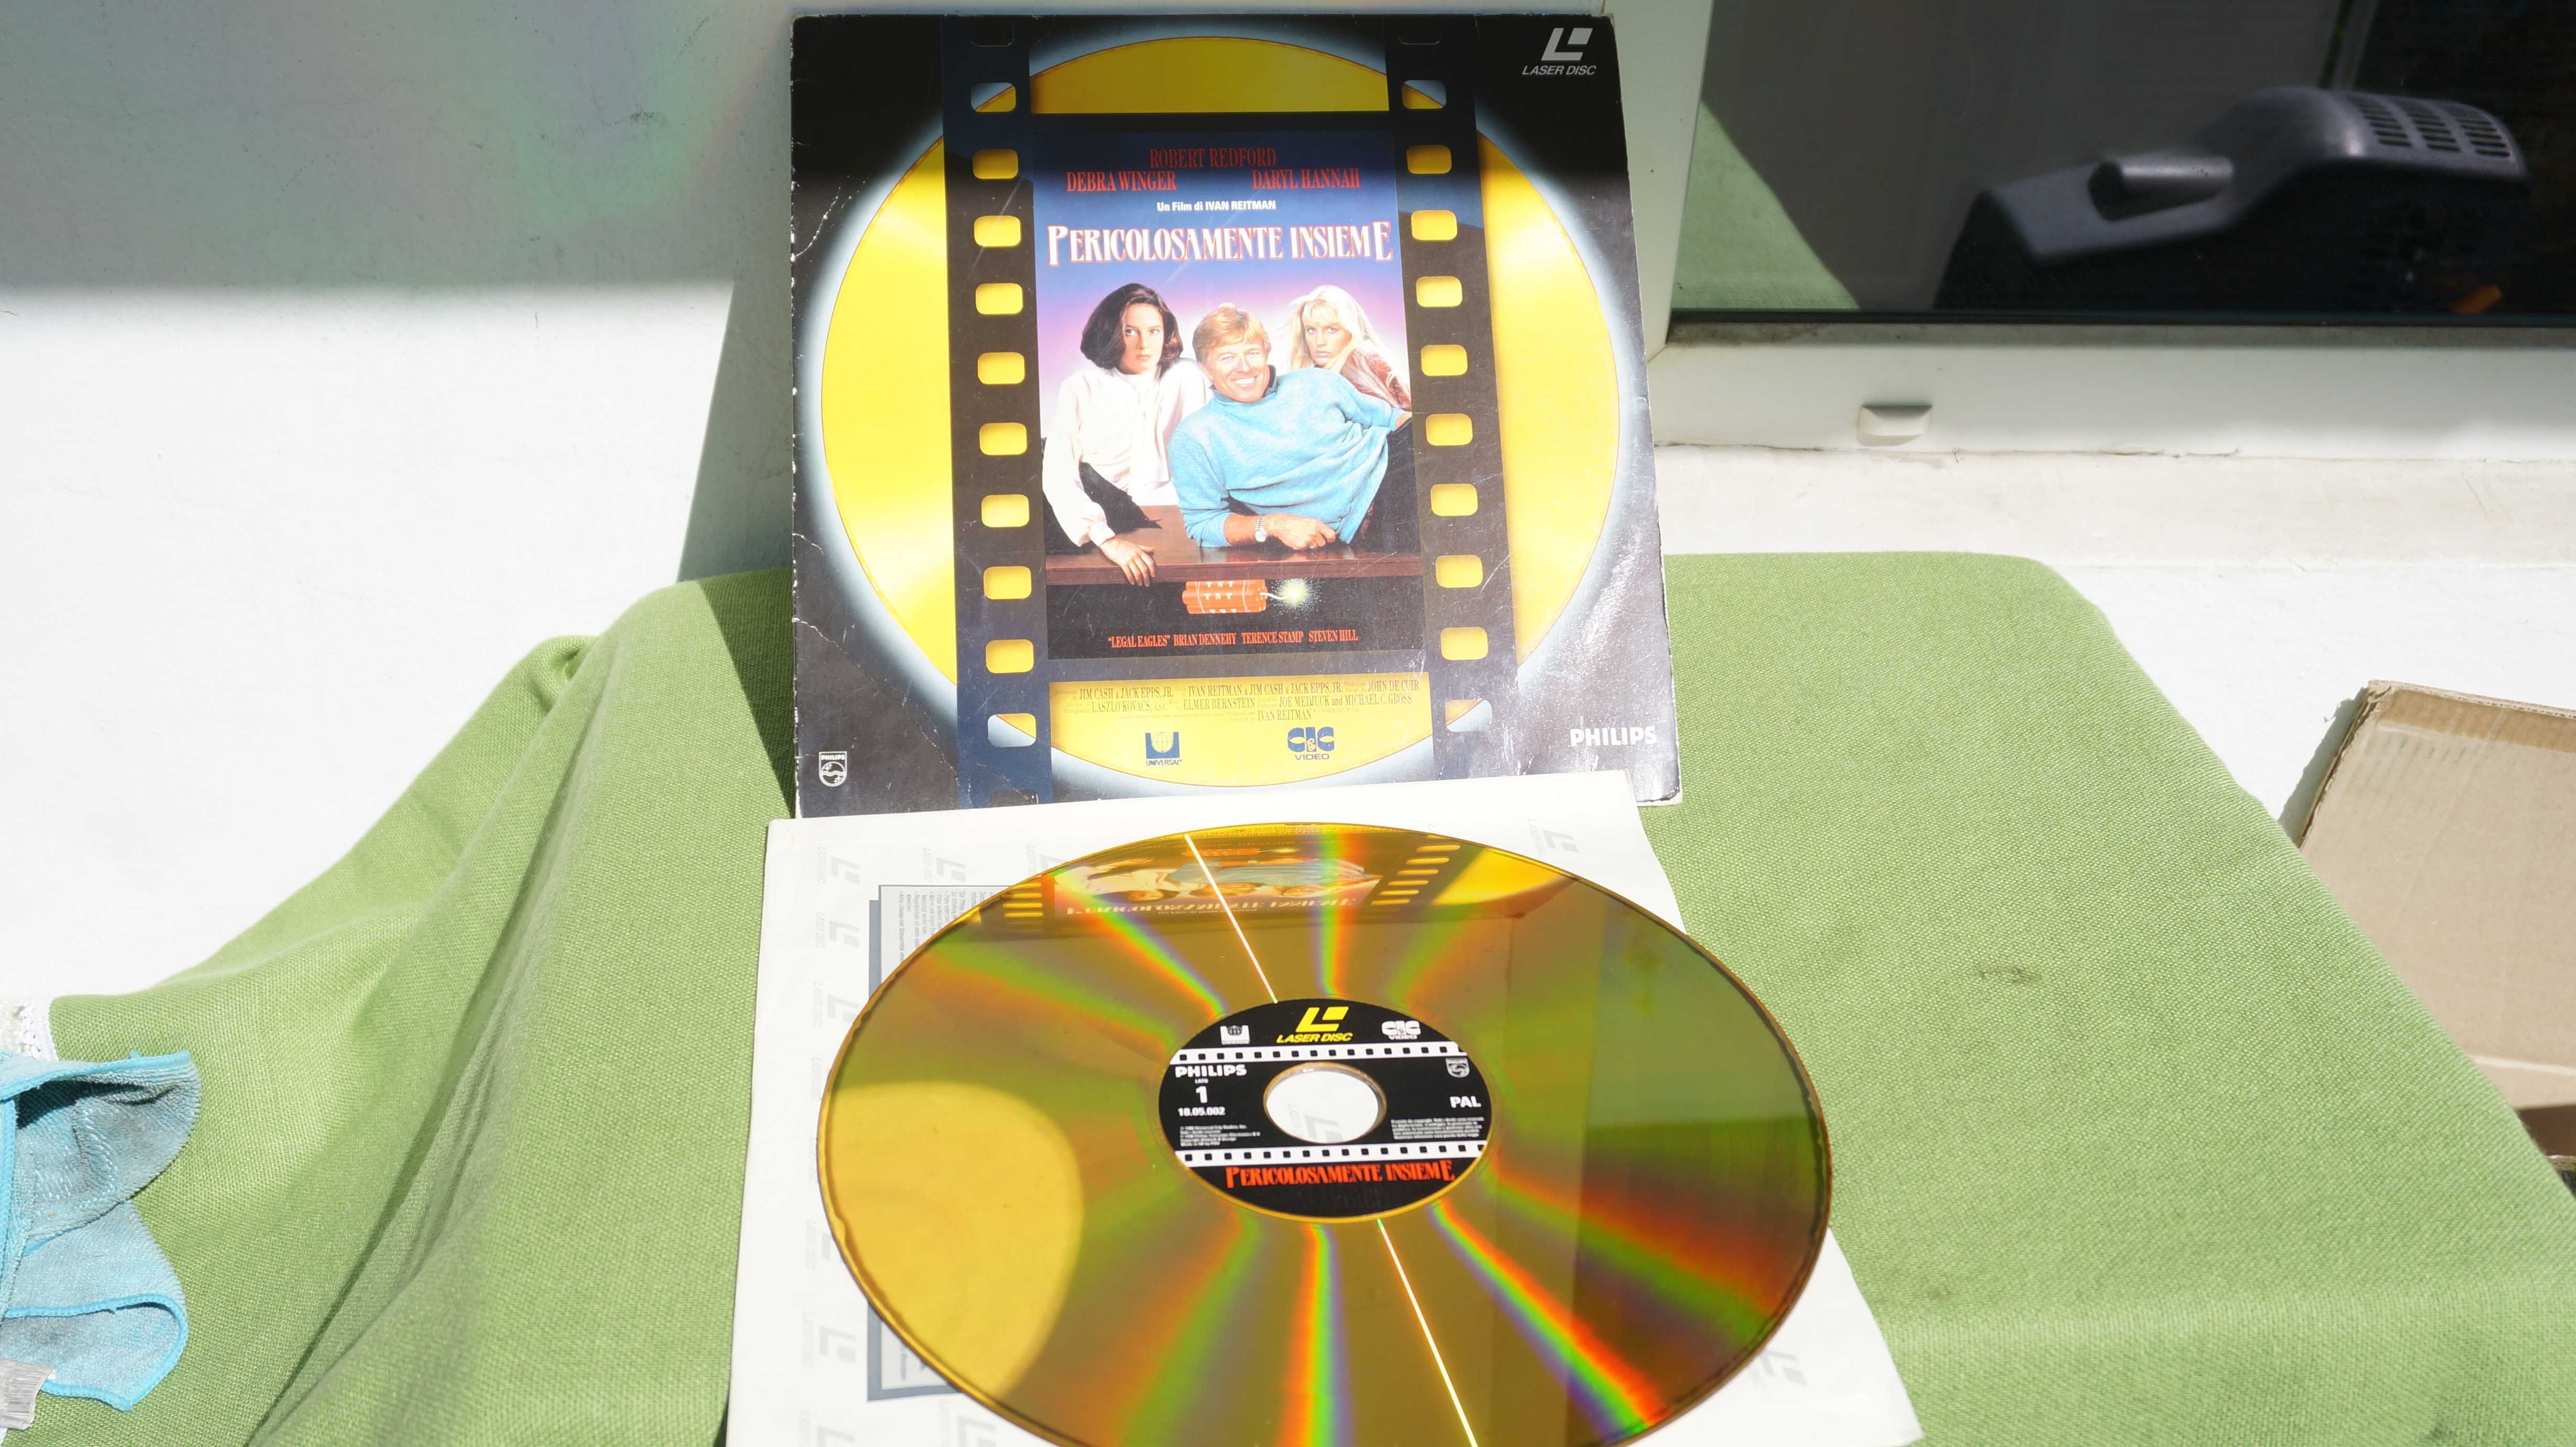 Colectie Laser Disc cu filme in limba italiana